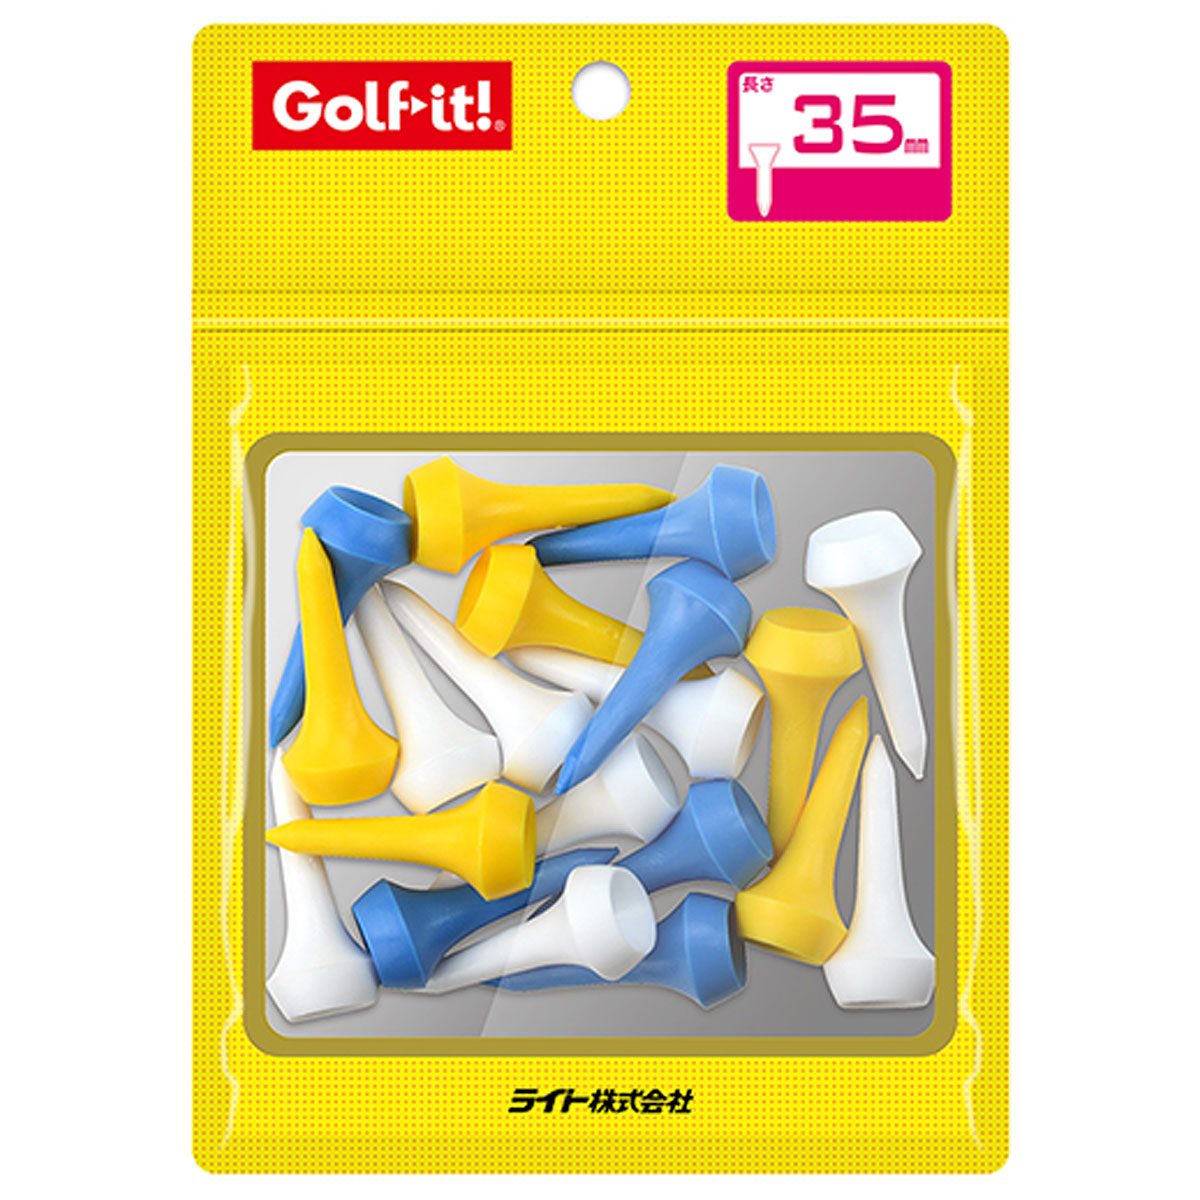 ゴルフ規則に適合 Golfit ゴルフイット LiTE ライト 格安激安 日本正規品 シェルパックアイアンティー35 大幅値下げランキング T-532 あす楽対応 全長35mm 20本入